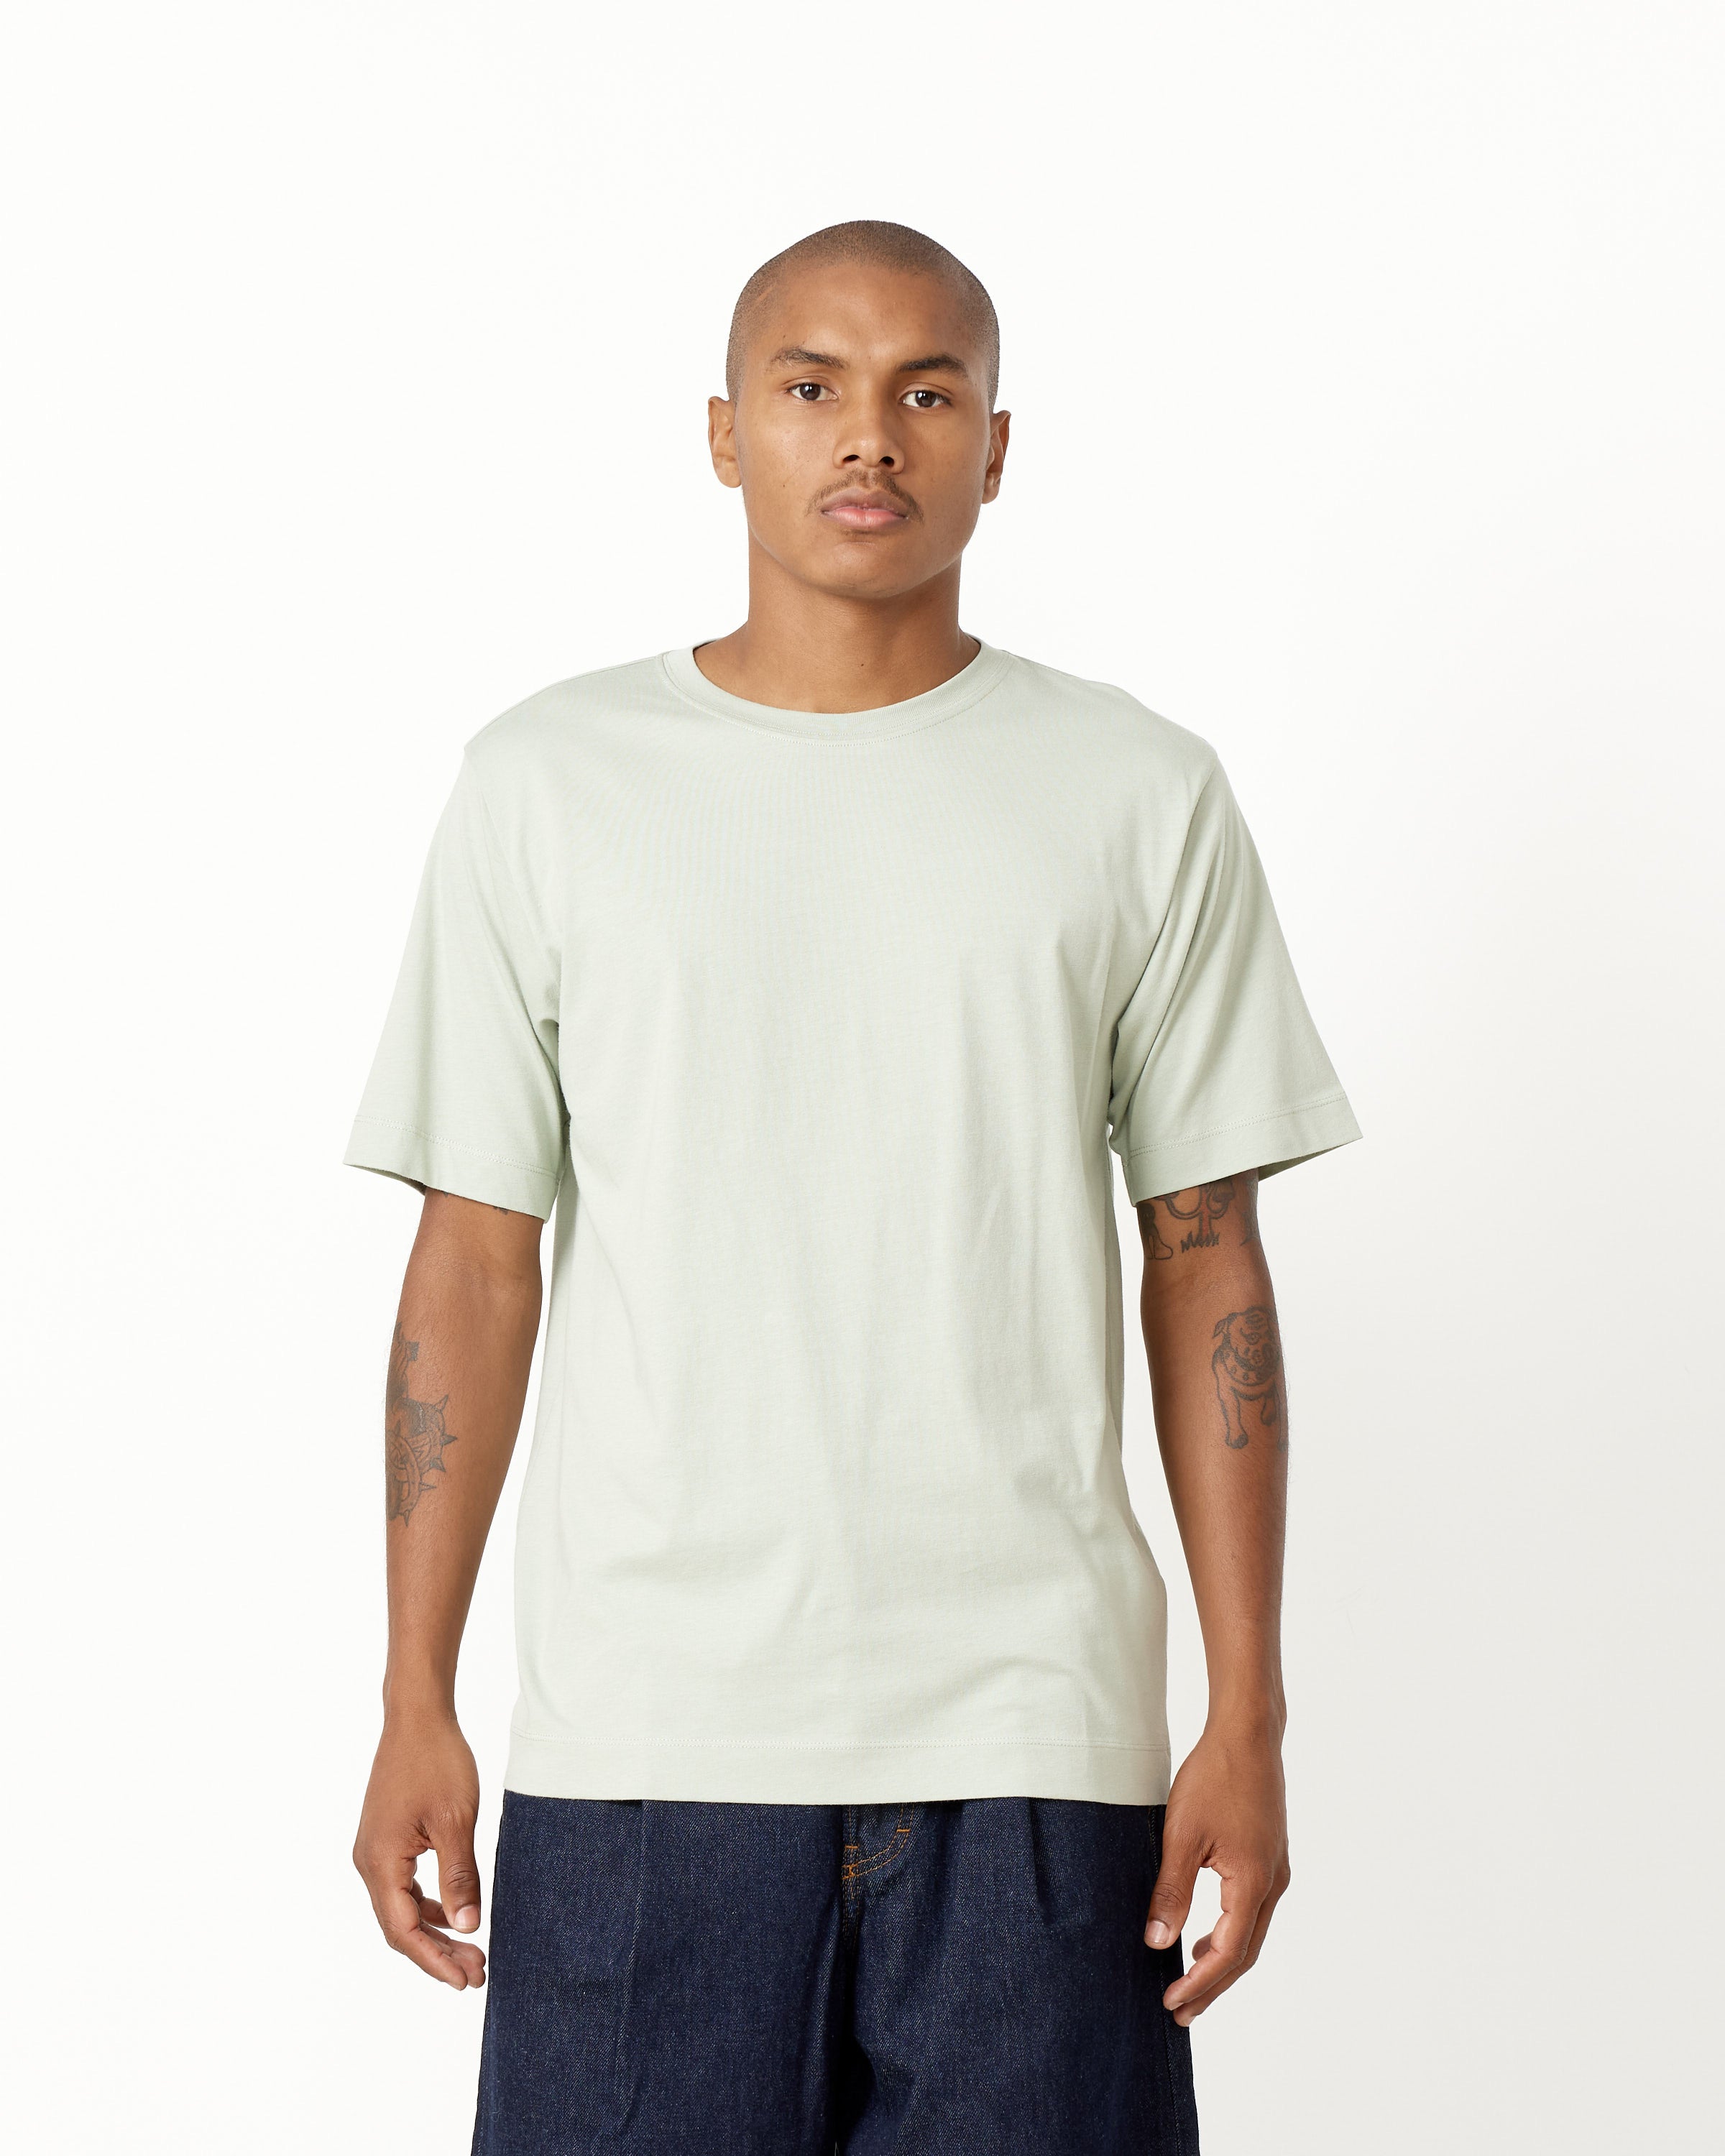 Hertz 7600 T-Shirt in Light Green